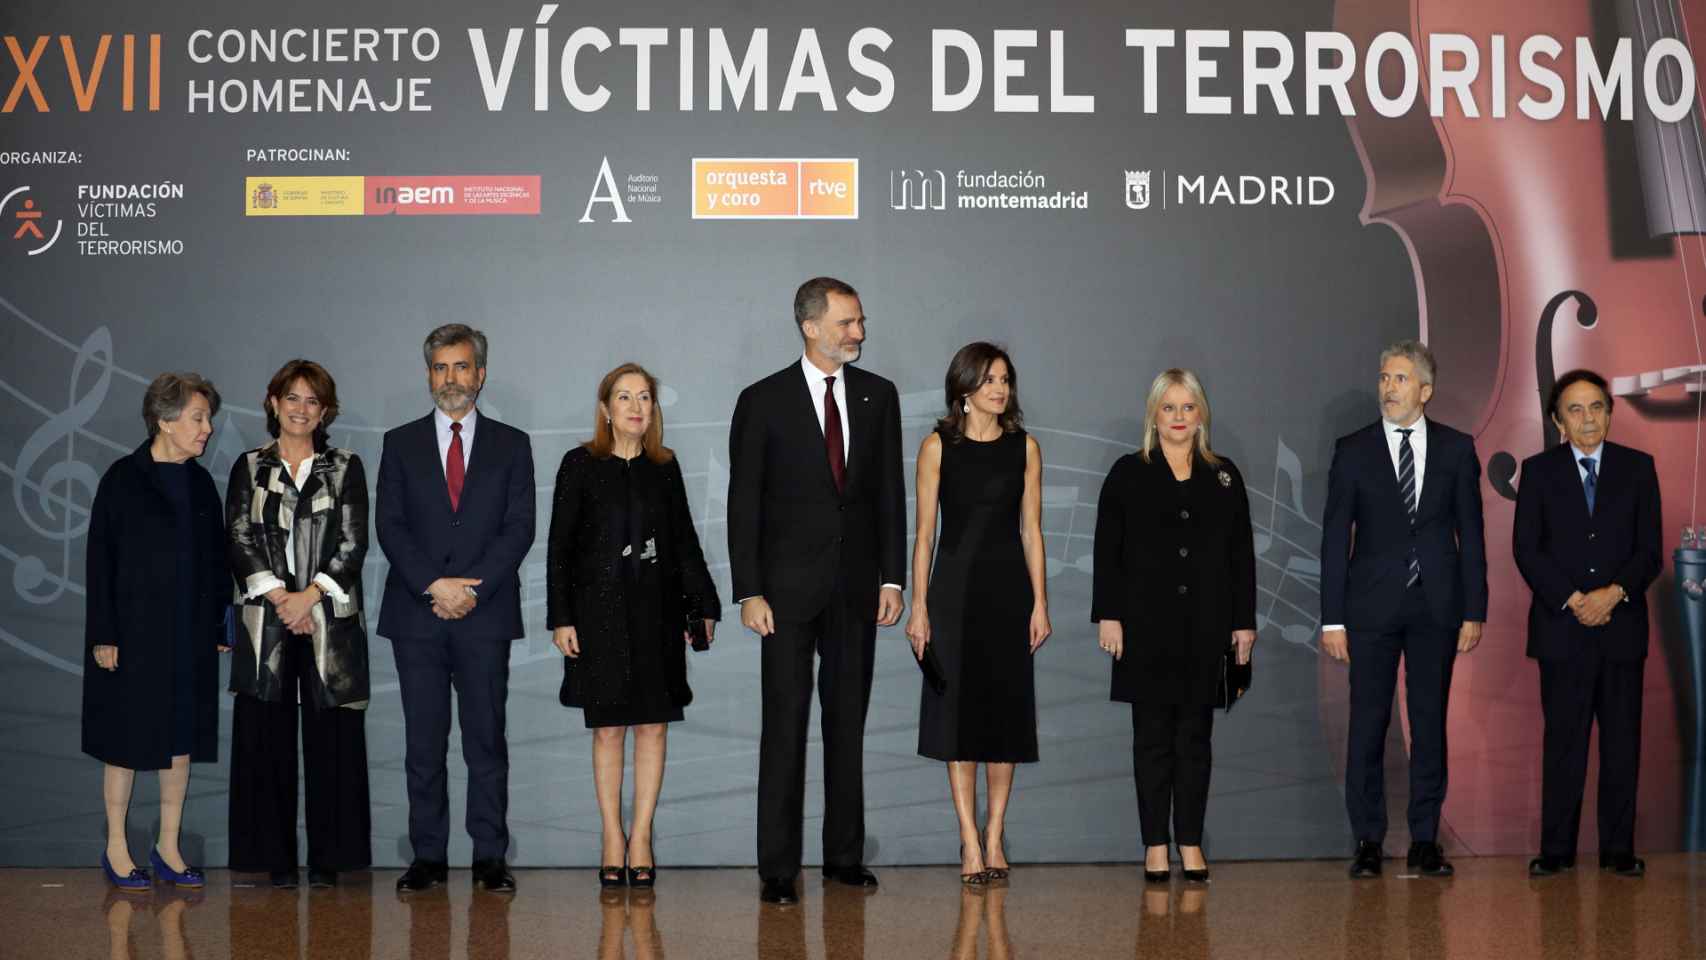 De izquierda a derecha: Rosa María Mateo, la ministra de Justicia Dolores Delgado, el presidente del Tribunal Supremo Carlos Lesmes, los reyes de España, Mari Mar Blanco y el ministro de Interior Fernando Grande Marlaska.